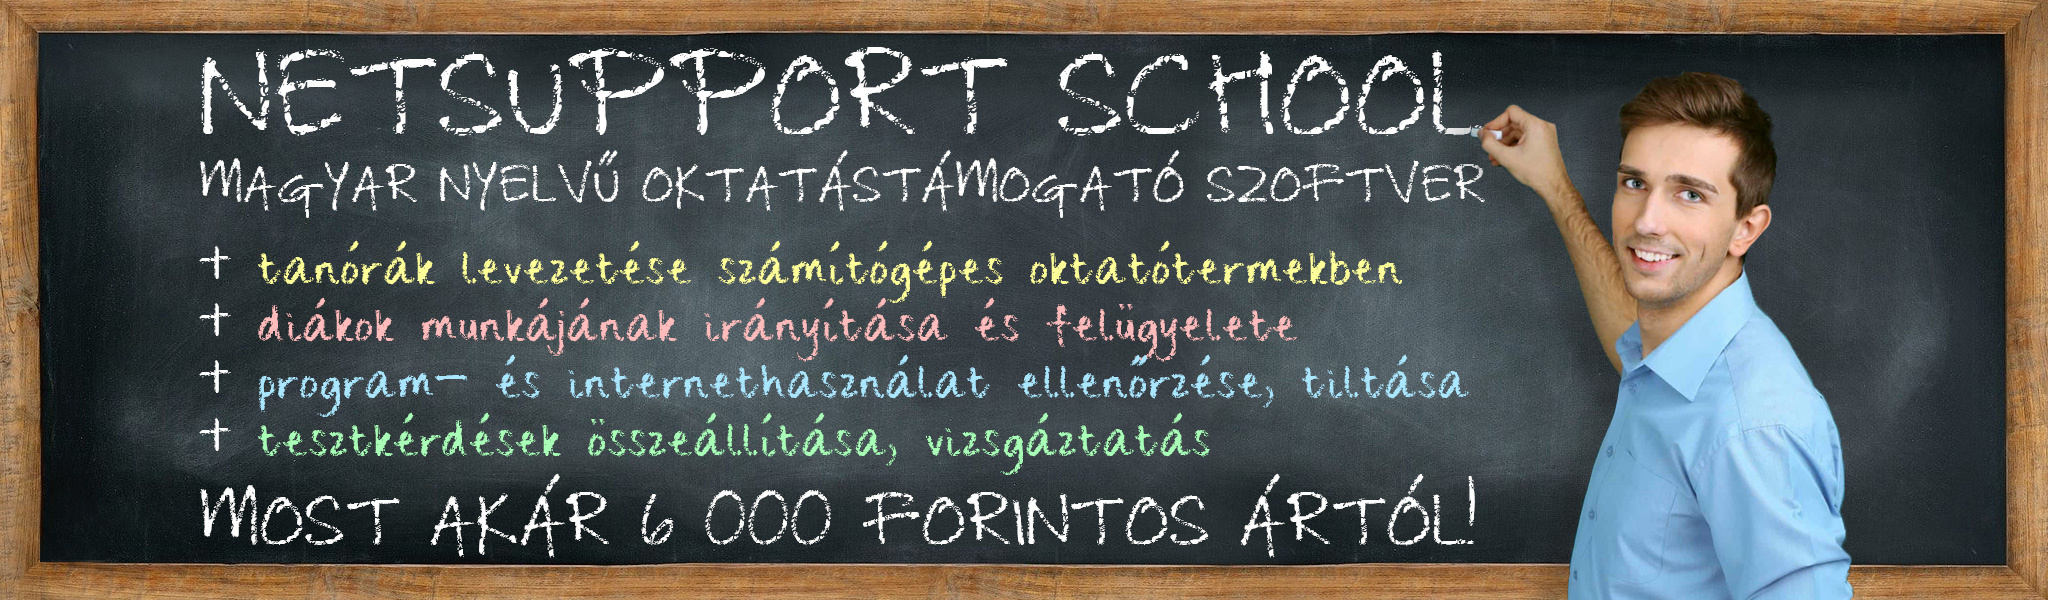 NetSupport School - most akár 6 000 forinttól!